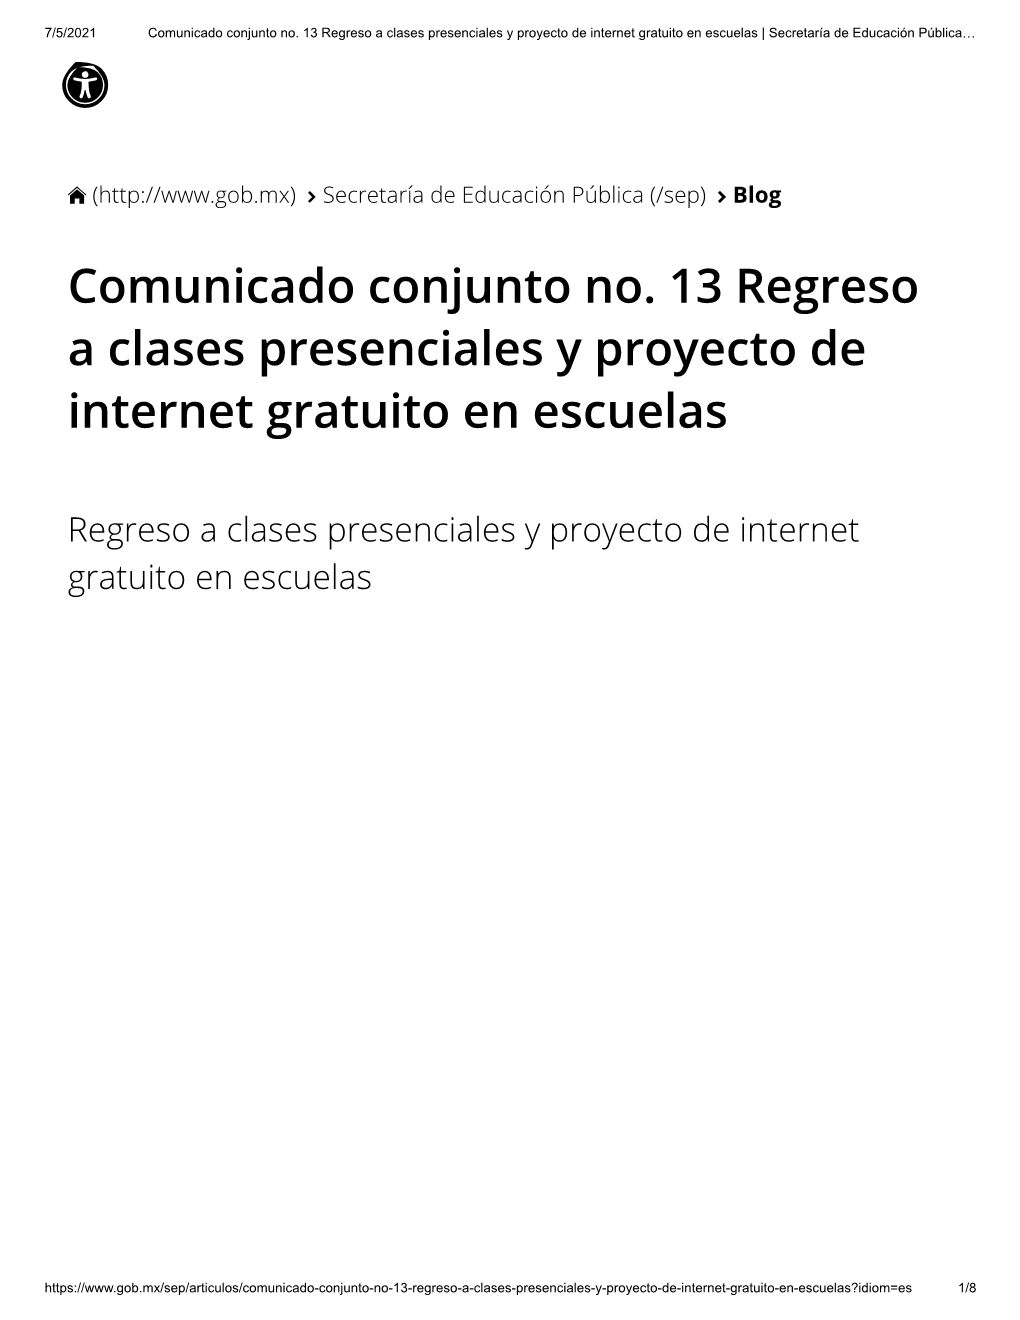 Comunicado Conjunto No. 13 Regreso a Clases Presenciales Y Proyecto De Internet Gratuito En Escuelas | Secretaría De Educación Pública… 